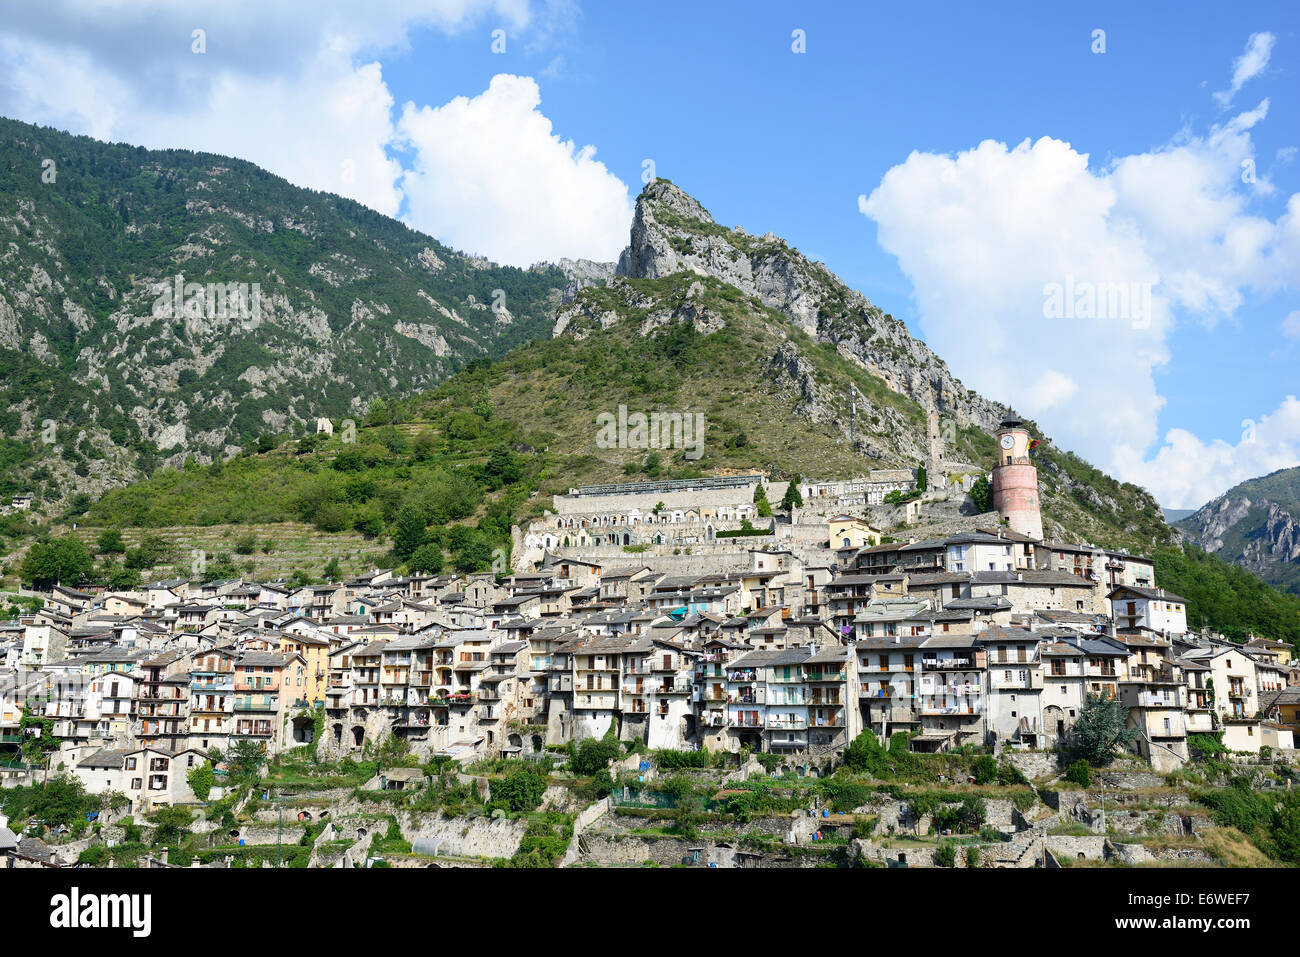 Pueblo medieval encaramado. Tende, Valle de Roya, Alpes Marítimos, Francia. Foto de stock